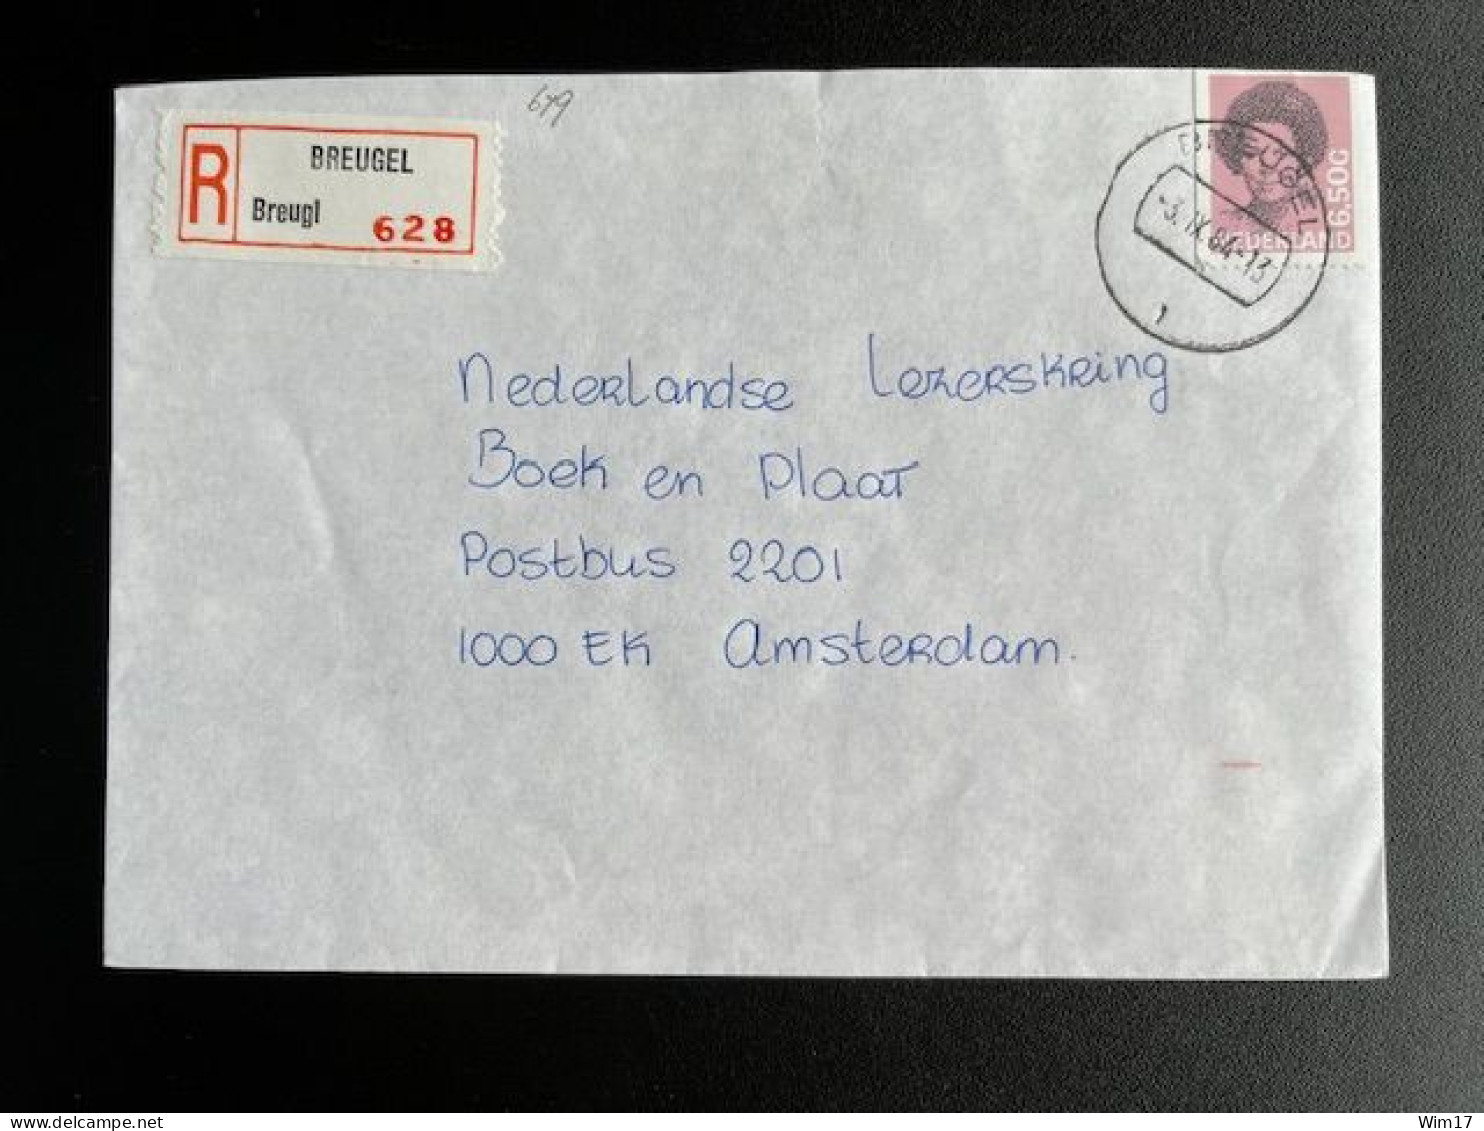 NETHERLANDS 1984 REGISTERED LETTER BREUGEL TO AMSTERDAM 03-09-1984 NEDERLAND - Briefe U. Dokumente